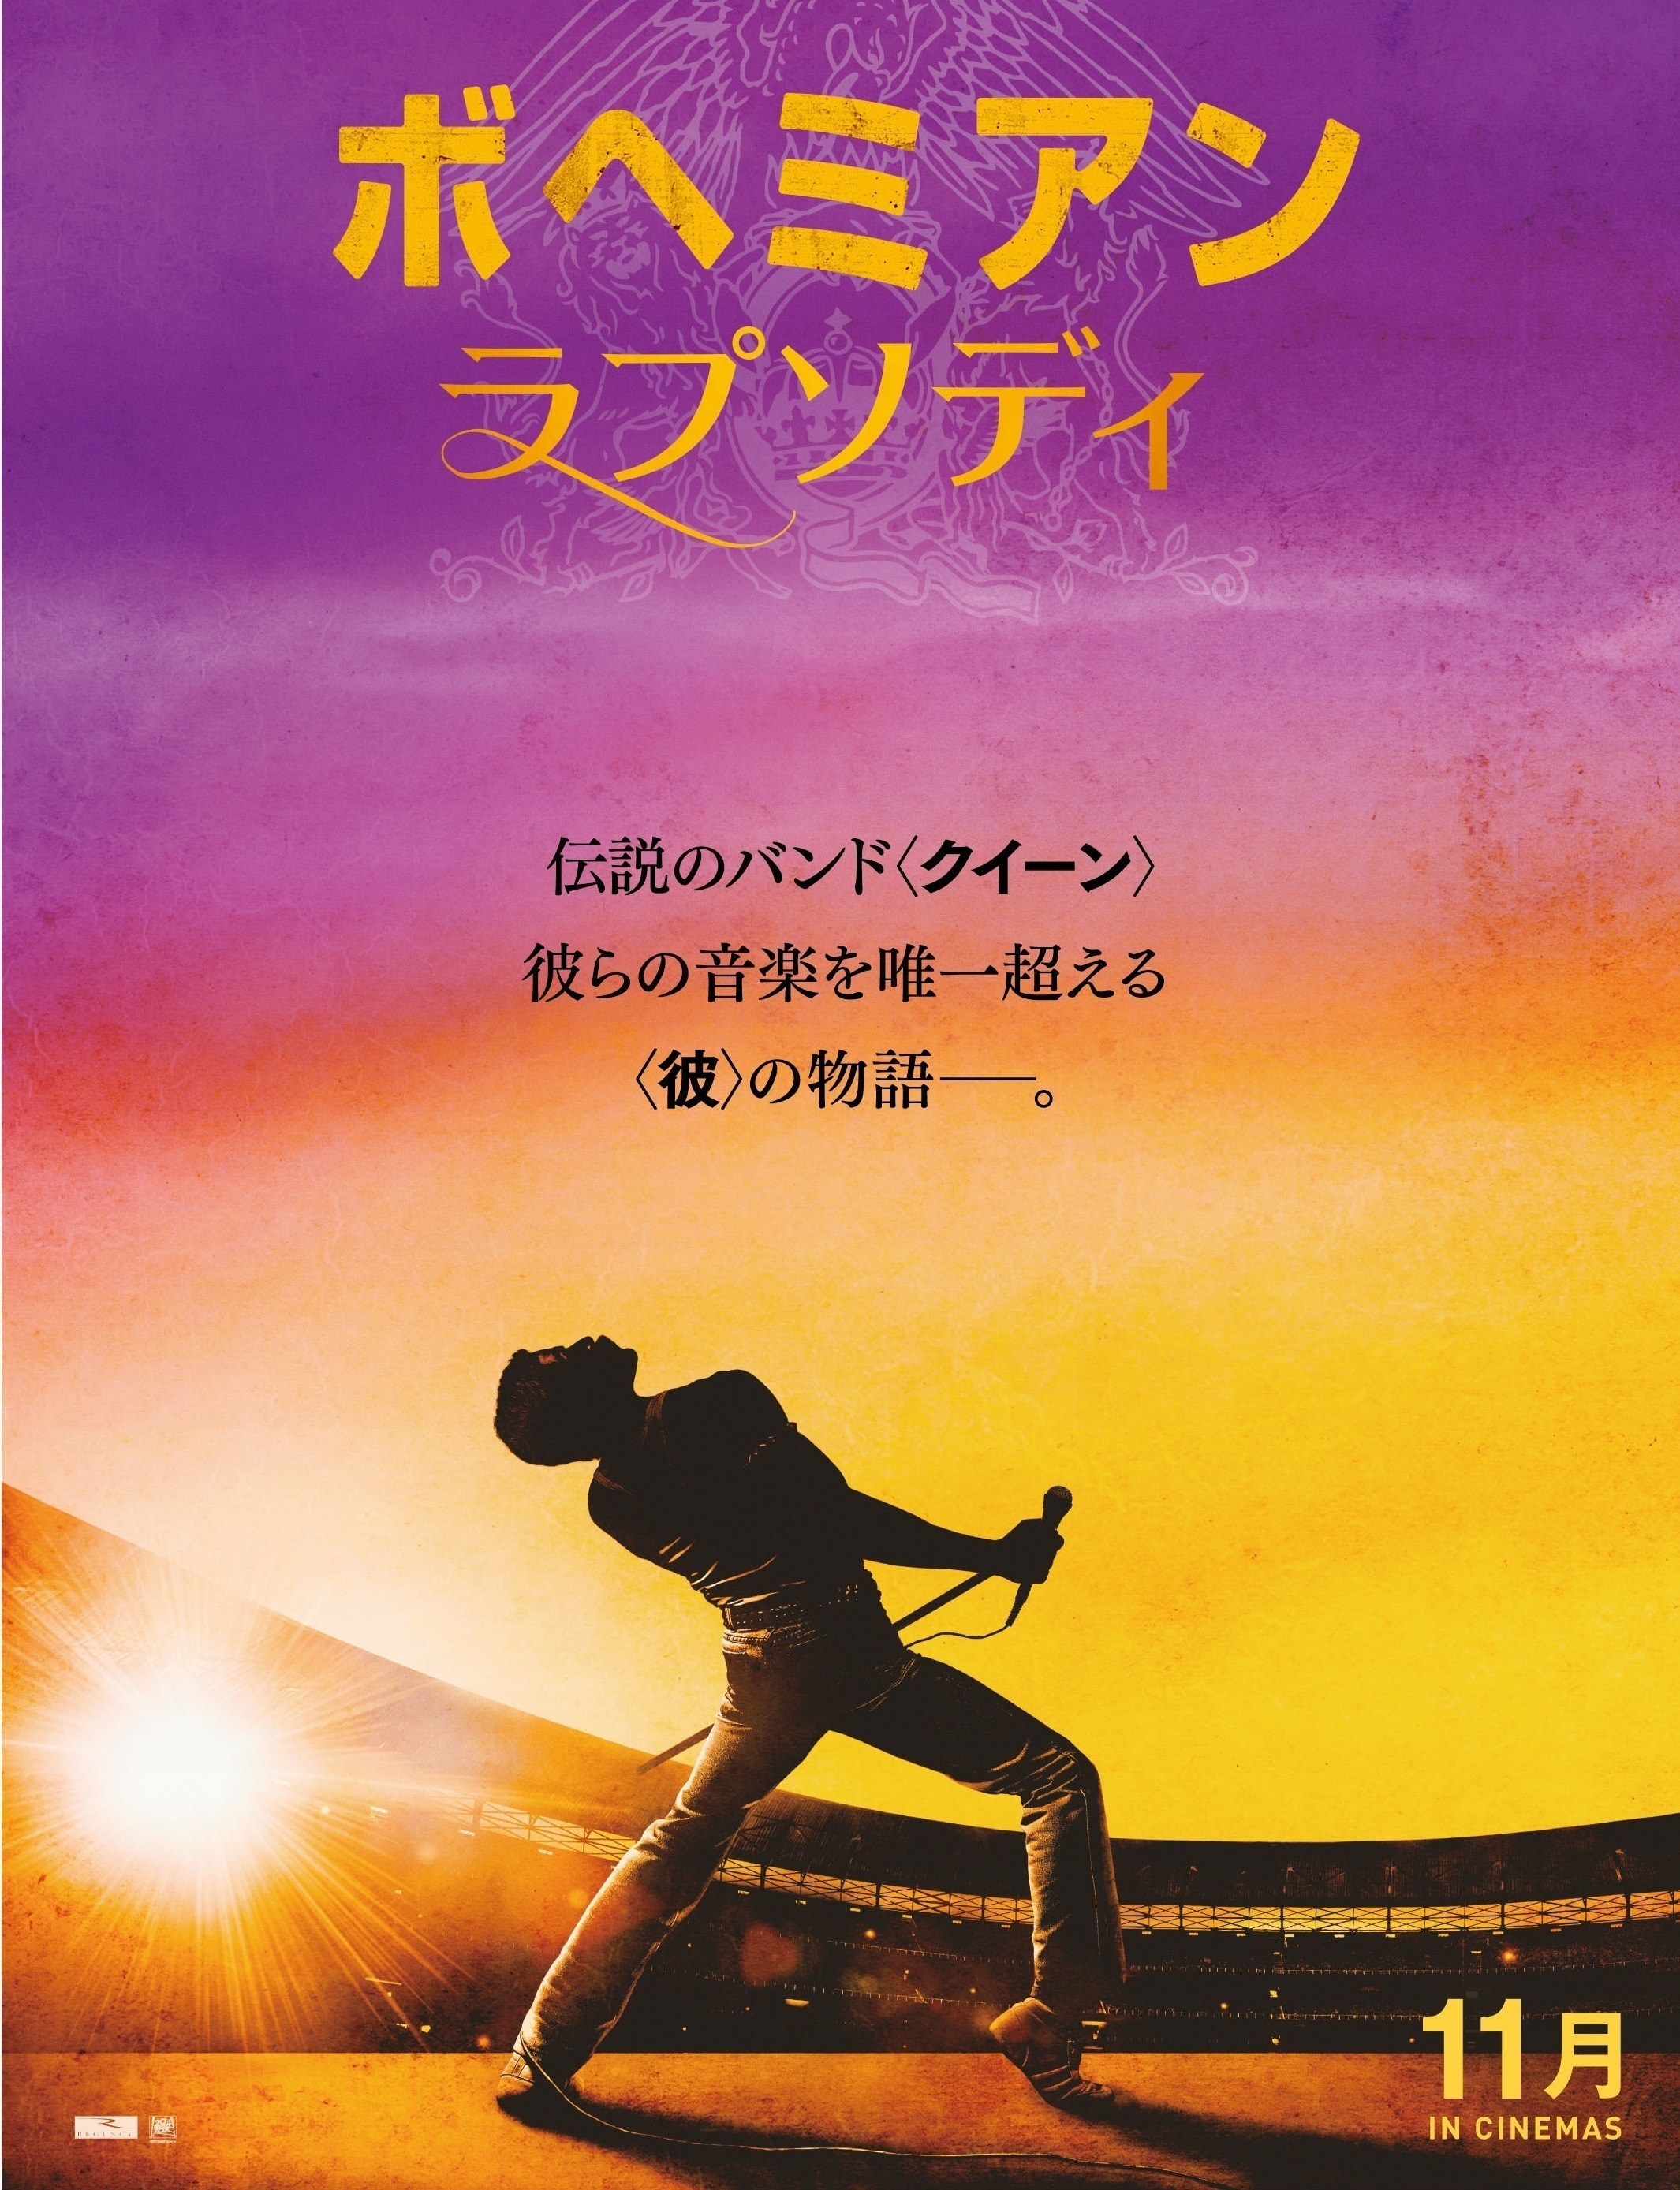 クイーンの伝記映画『ボヘミアン・ラプソディ』、日本版ポスターが解禁